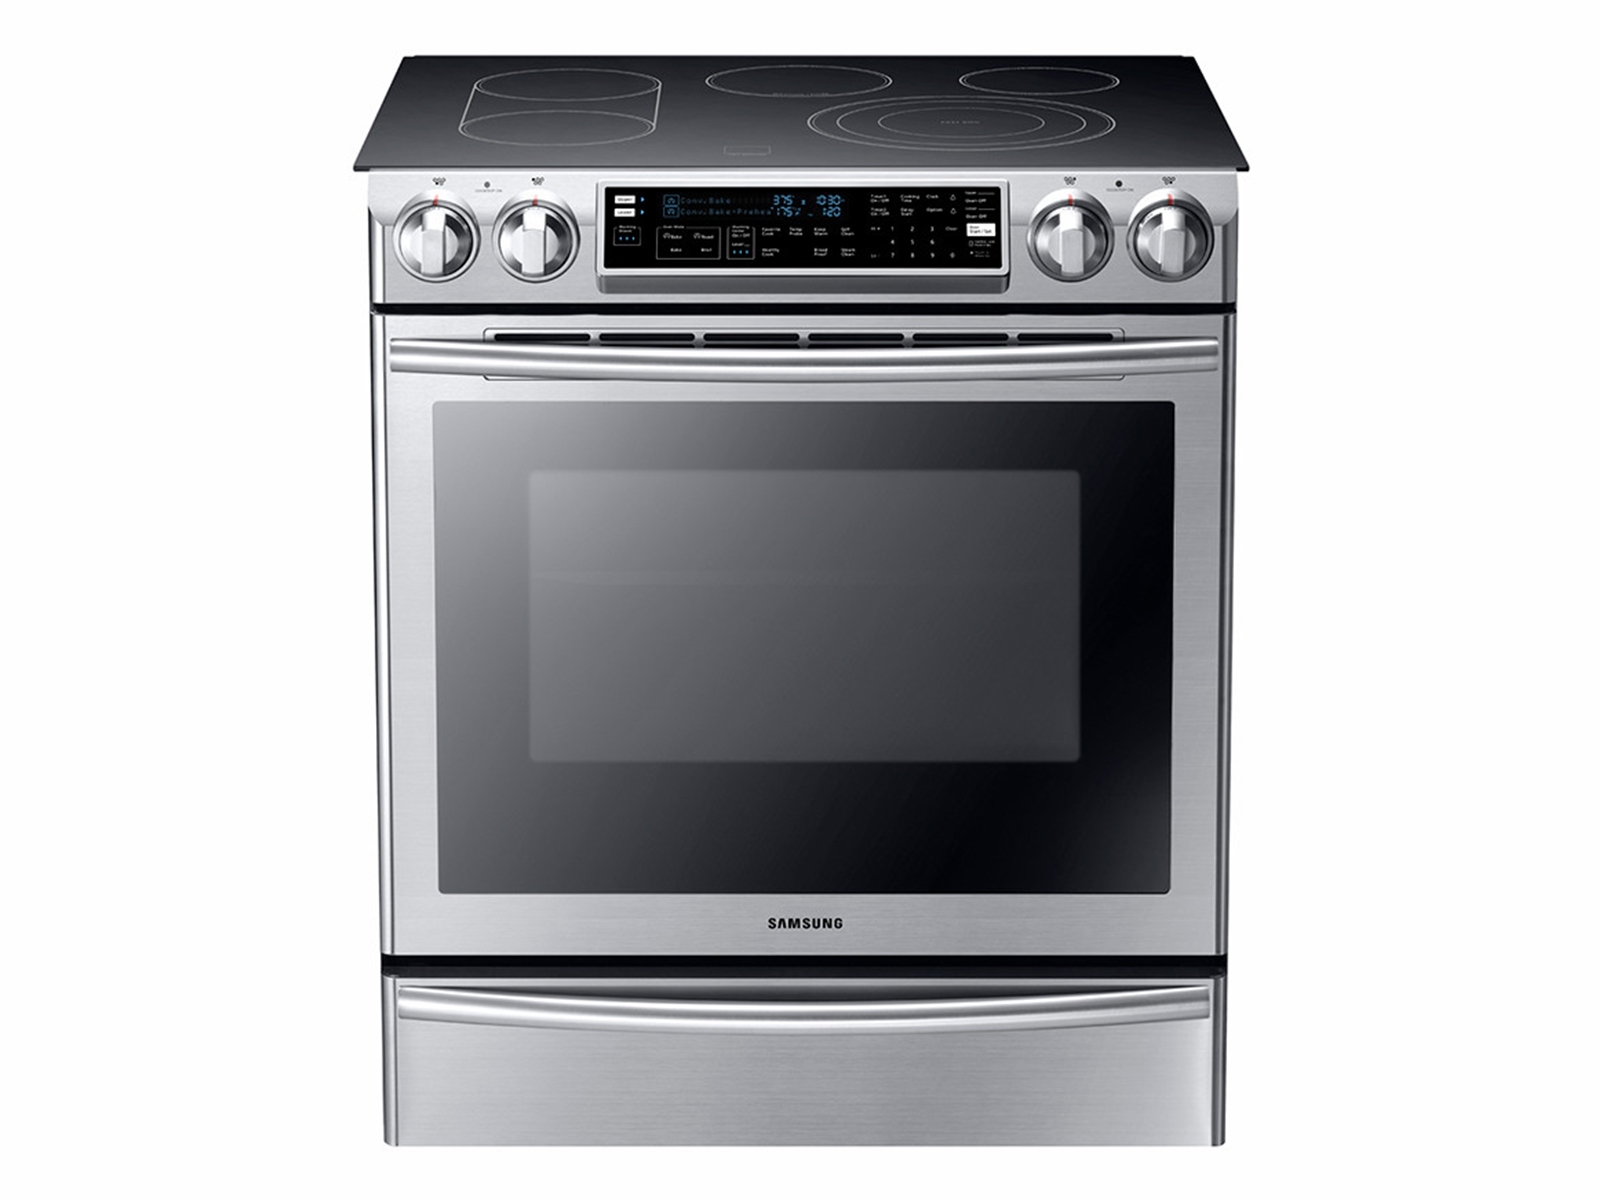 Superchef home appliances  Your complete kitchen partner